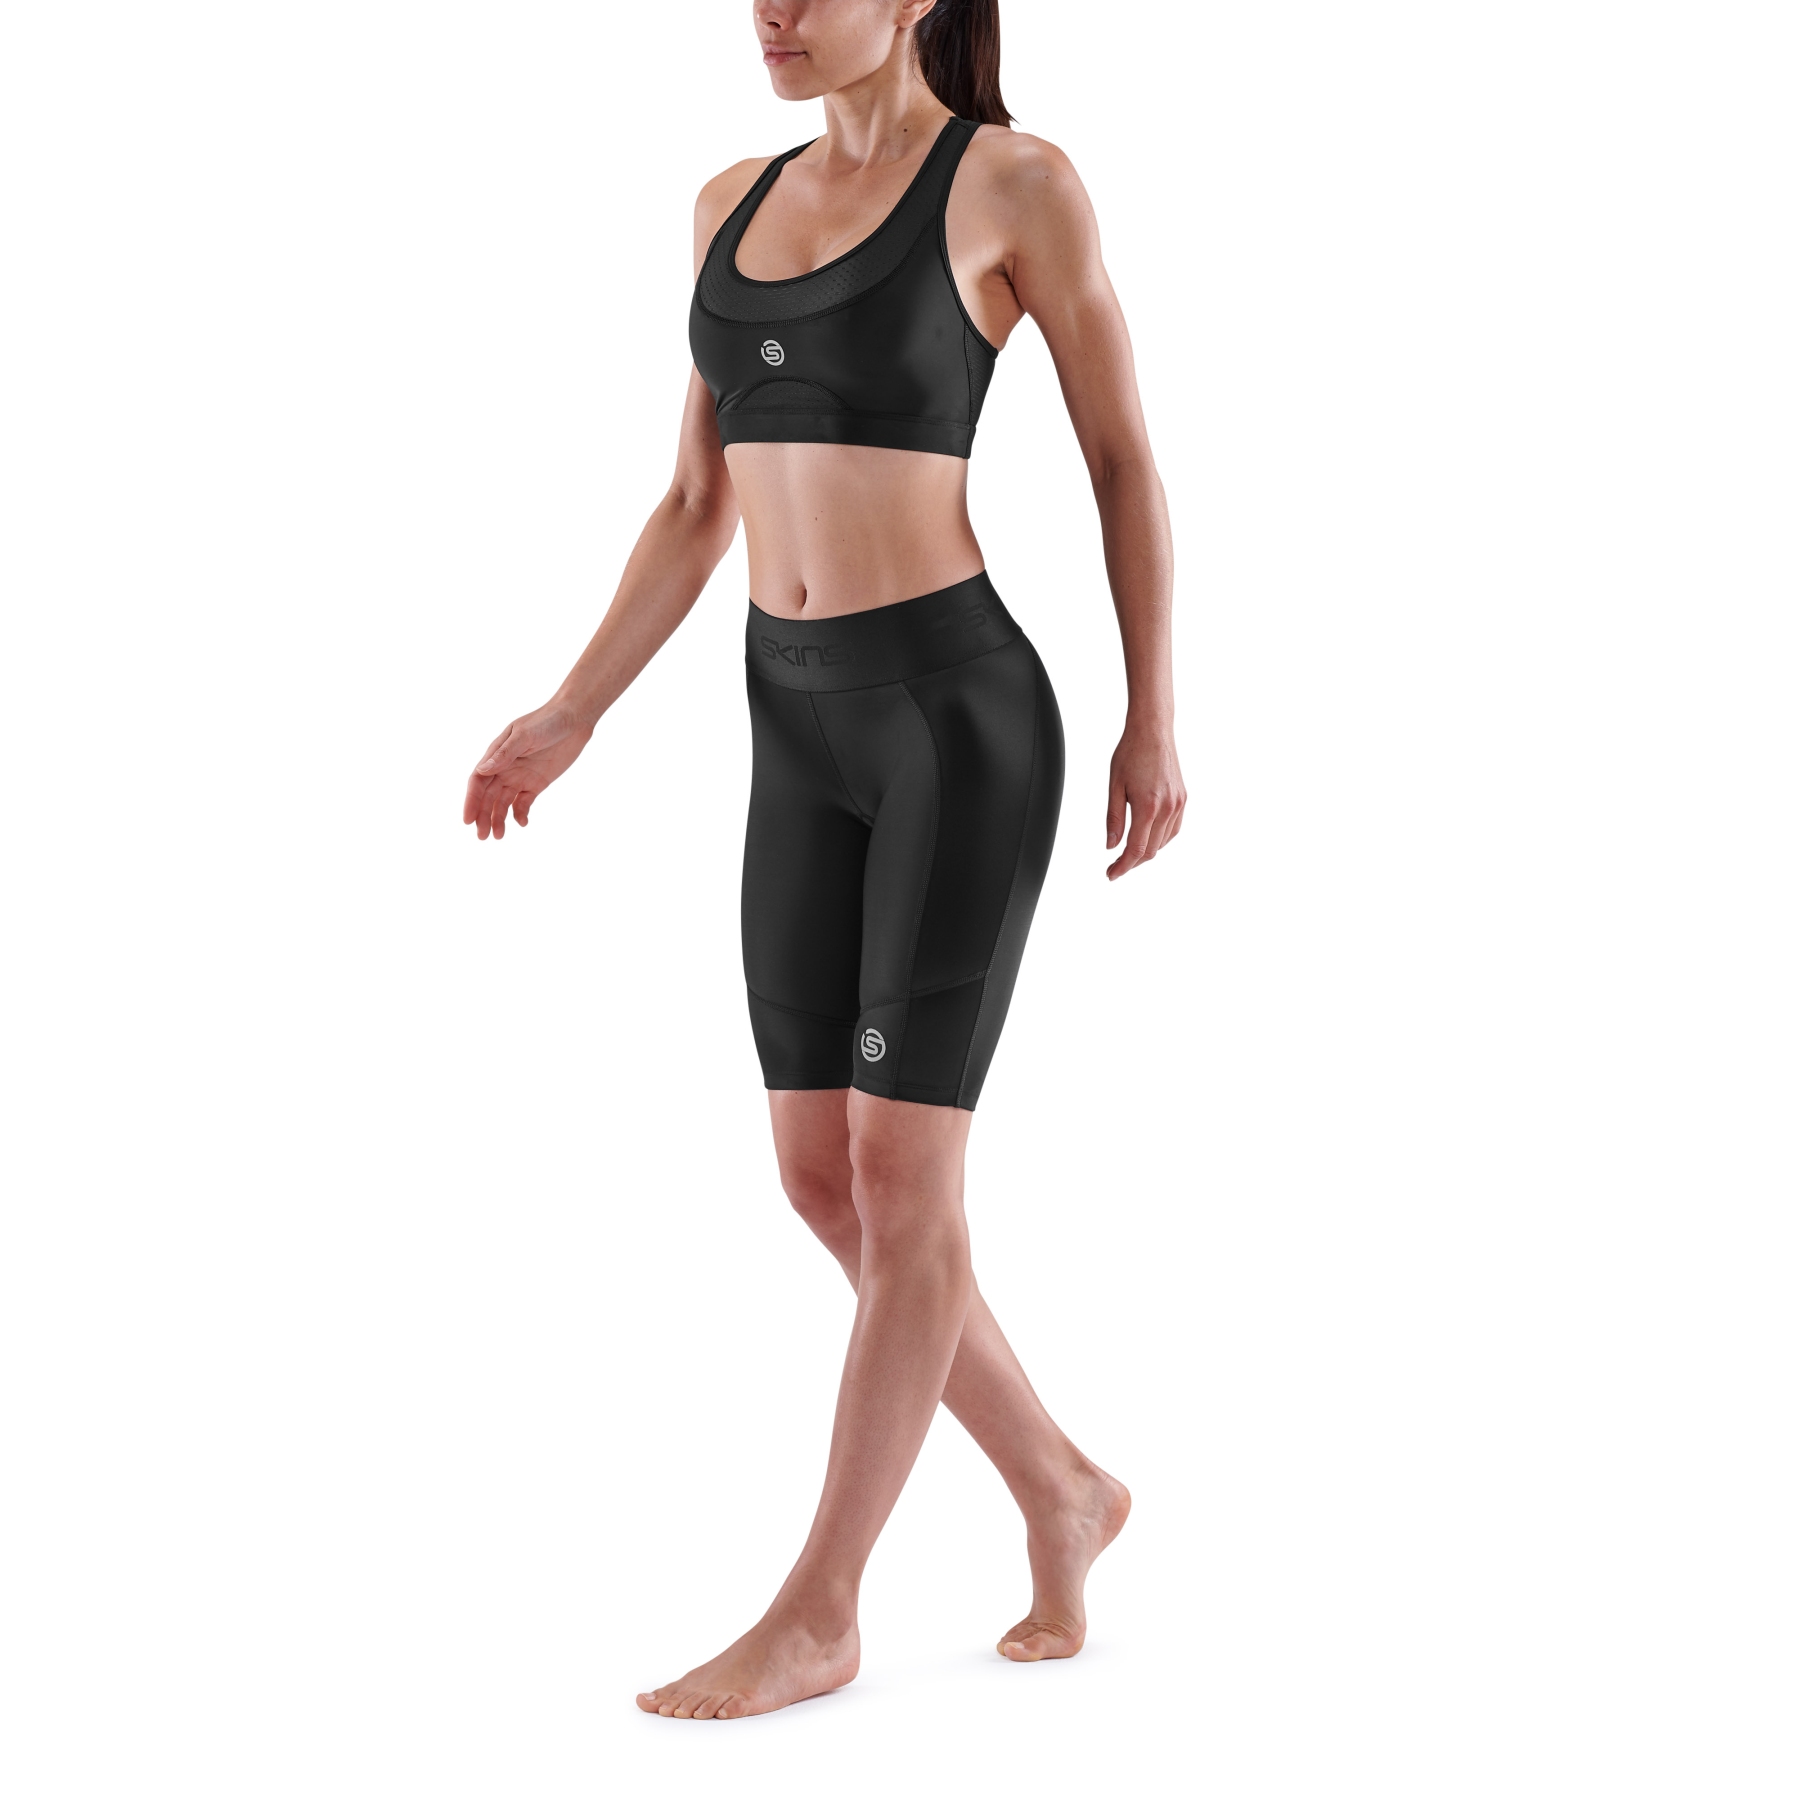 https://images.bike24.com/i/mb/6f/01/3d/skins-compression-3-series-women-half-tights-black-2-893337.jpg